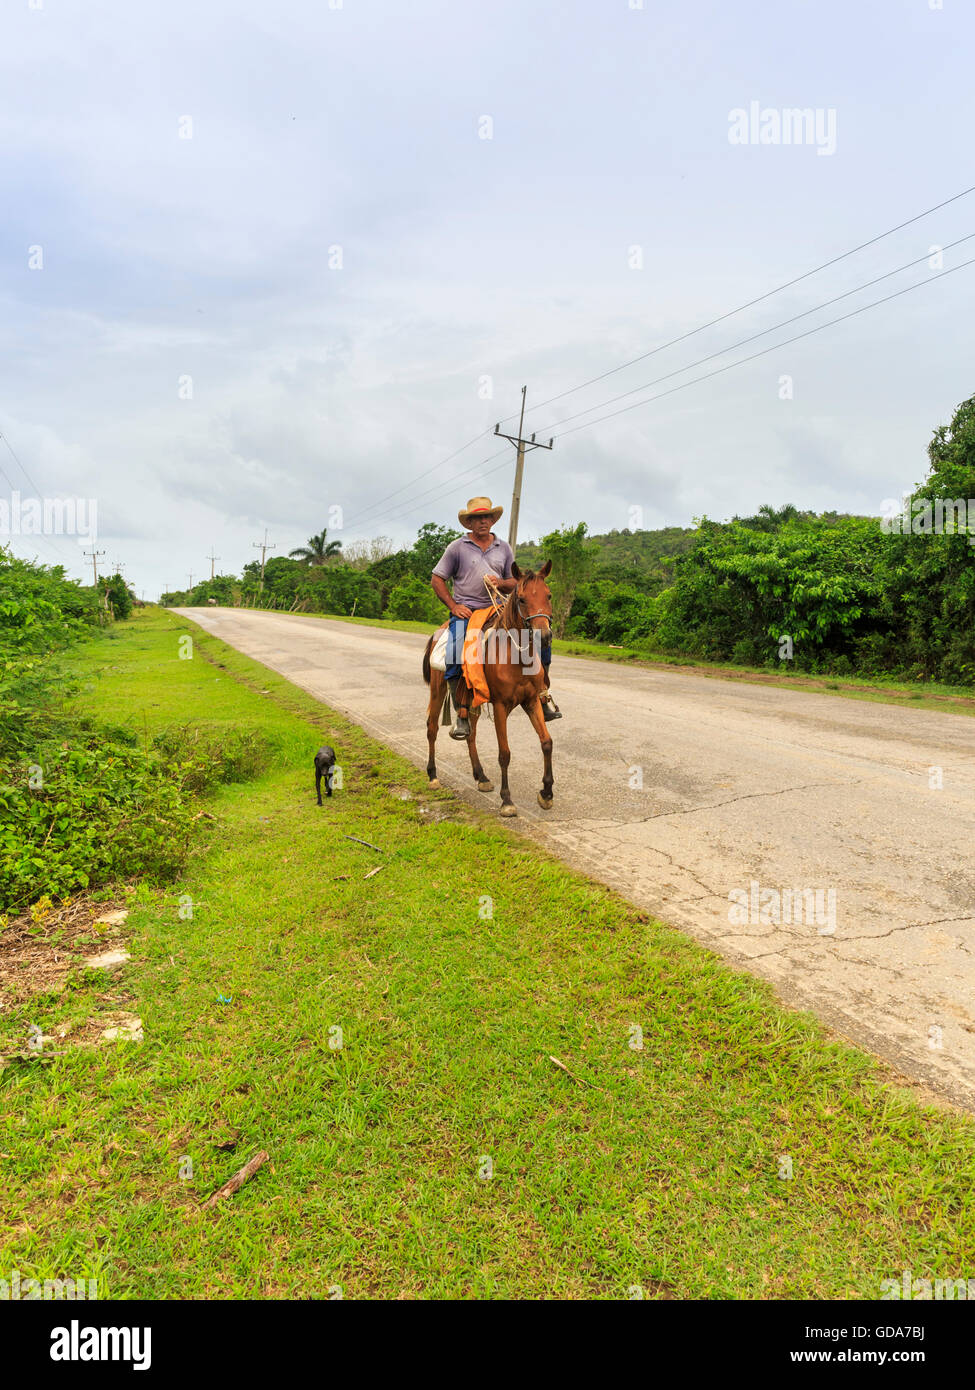 Cuban farmer riding a horse along a rural road near Trinidad, Sancti Spiritus, Cuba Stock Photo